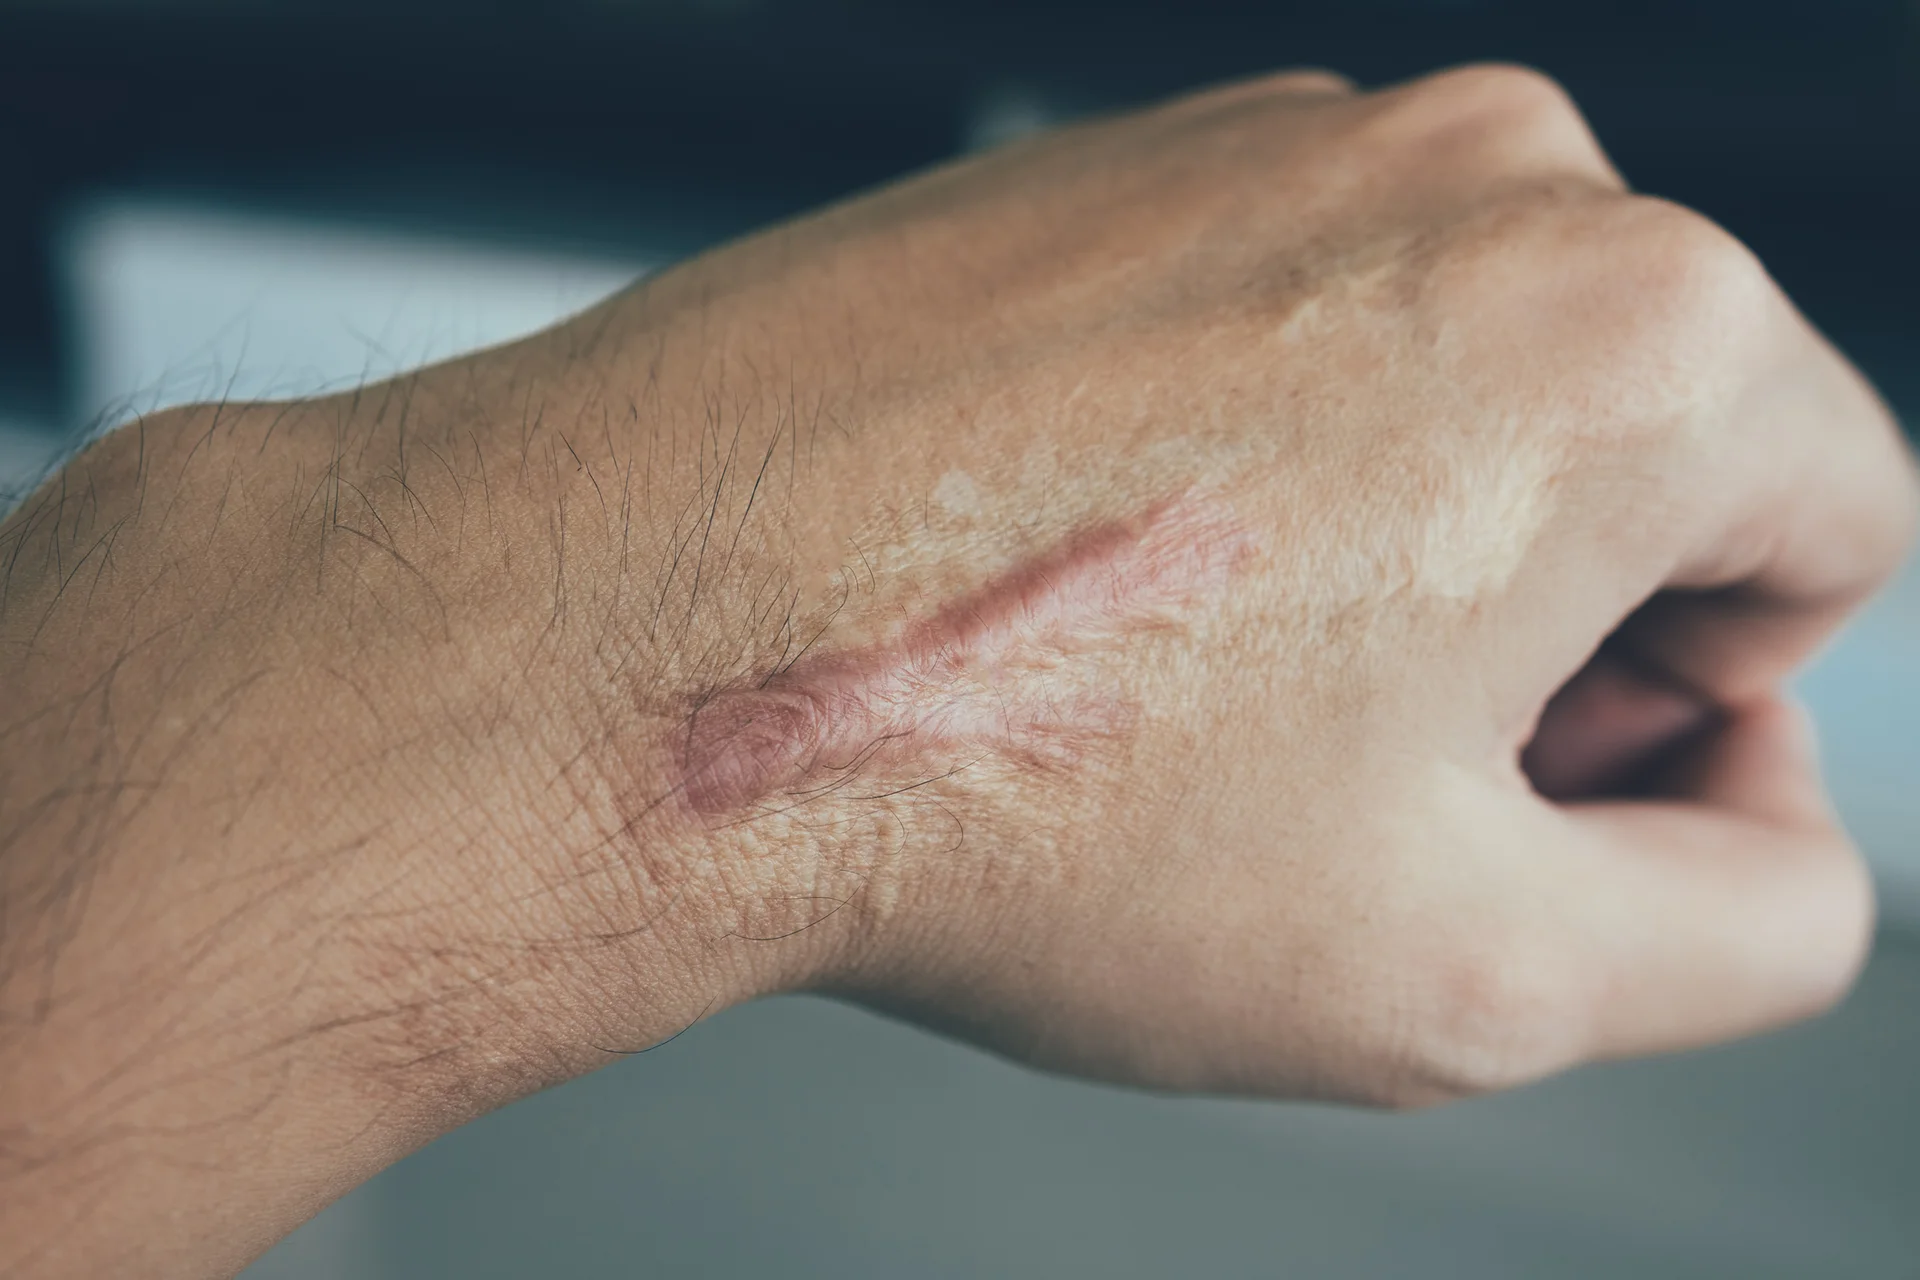 keloid scar in the hand